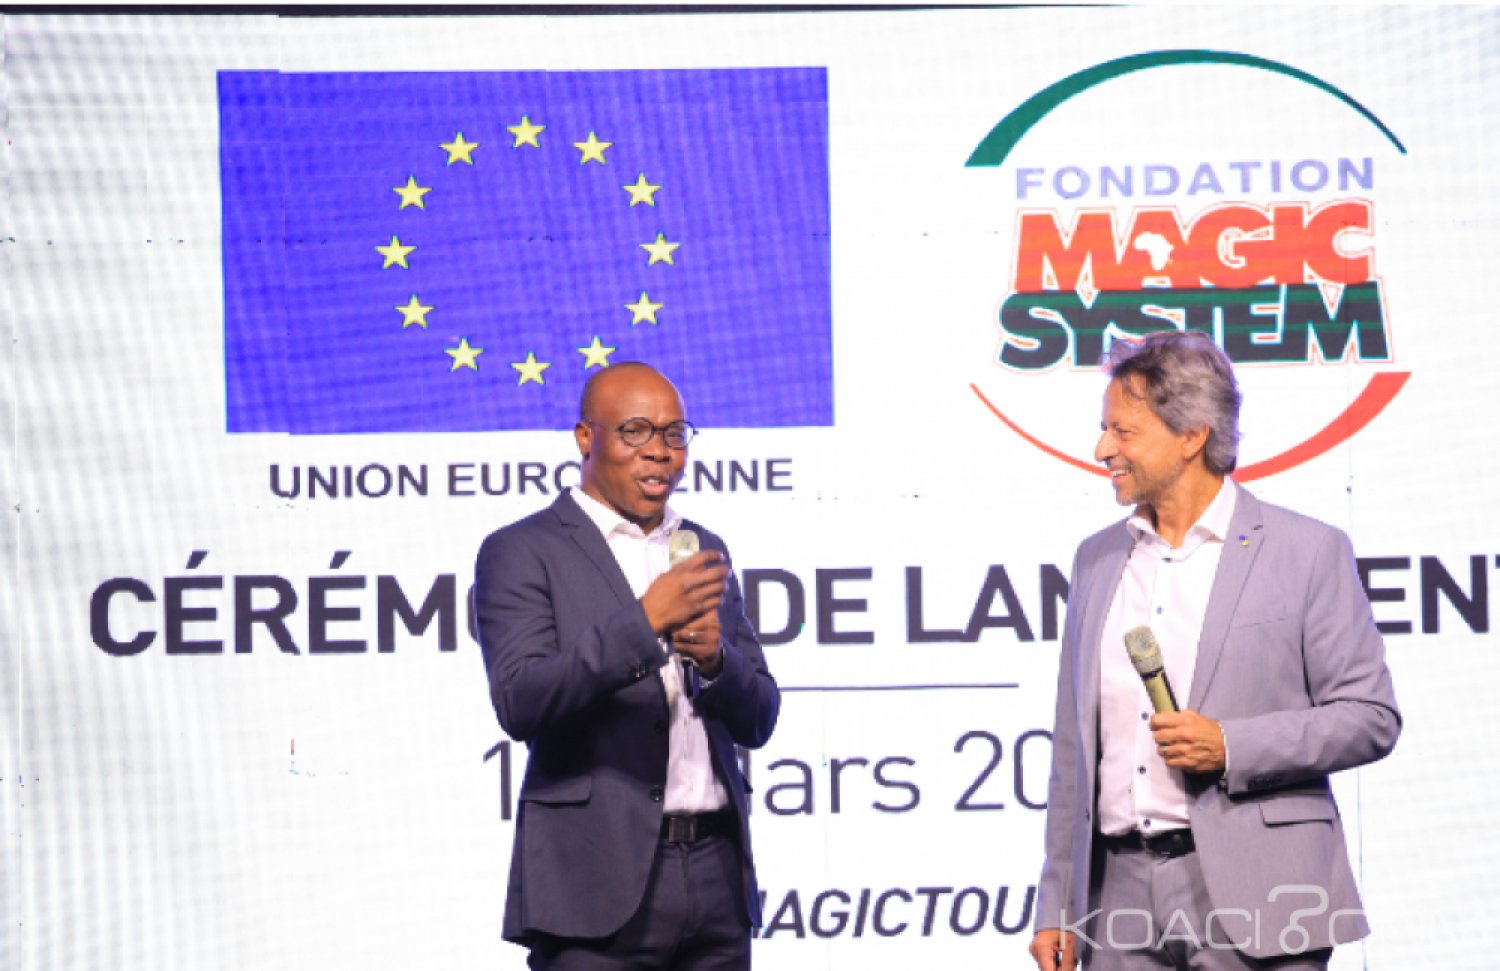 Côte d'Ivoire : L'union Européenne et une vingtaine d'artistes vont partager leur valeur avec les populations  à  travers une caravane